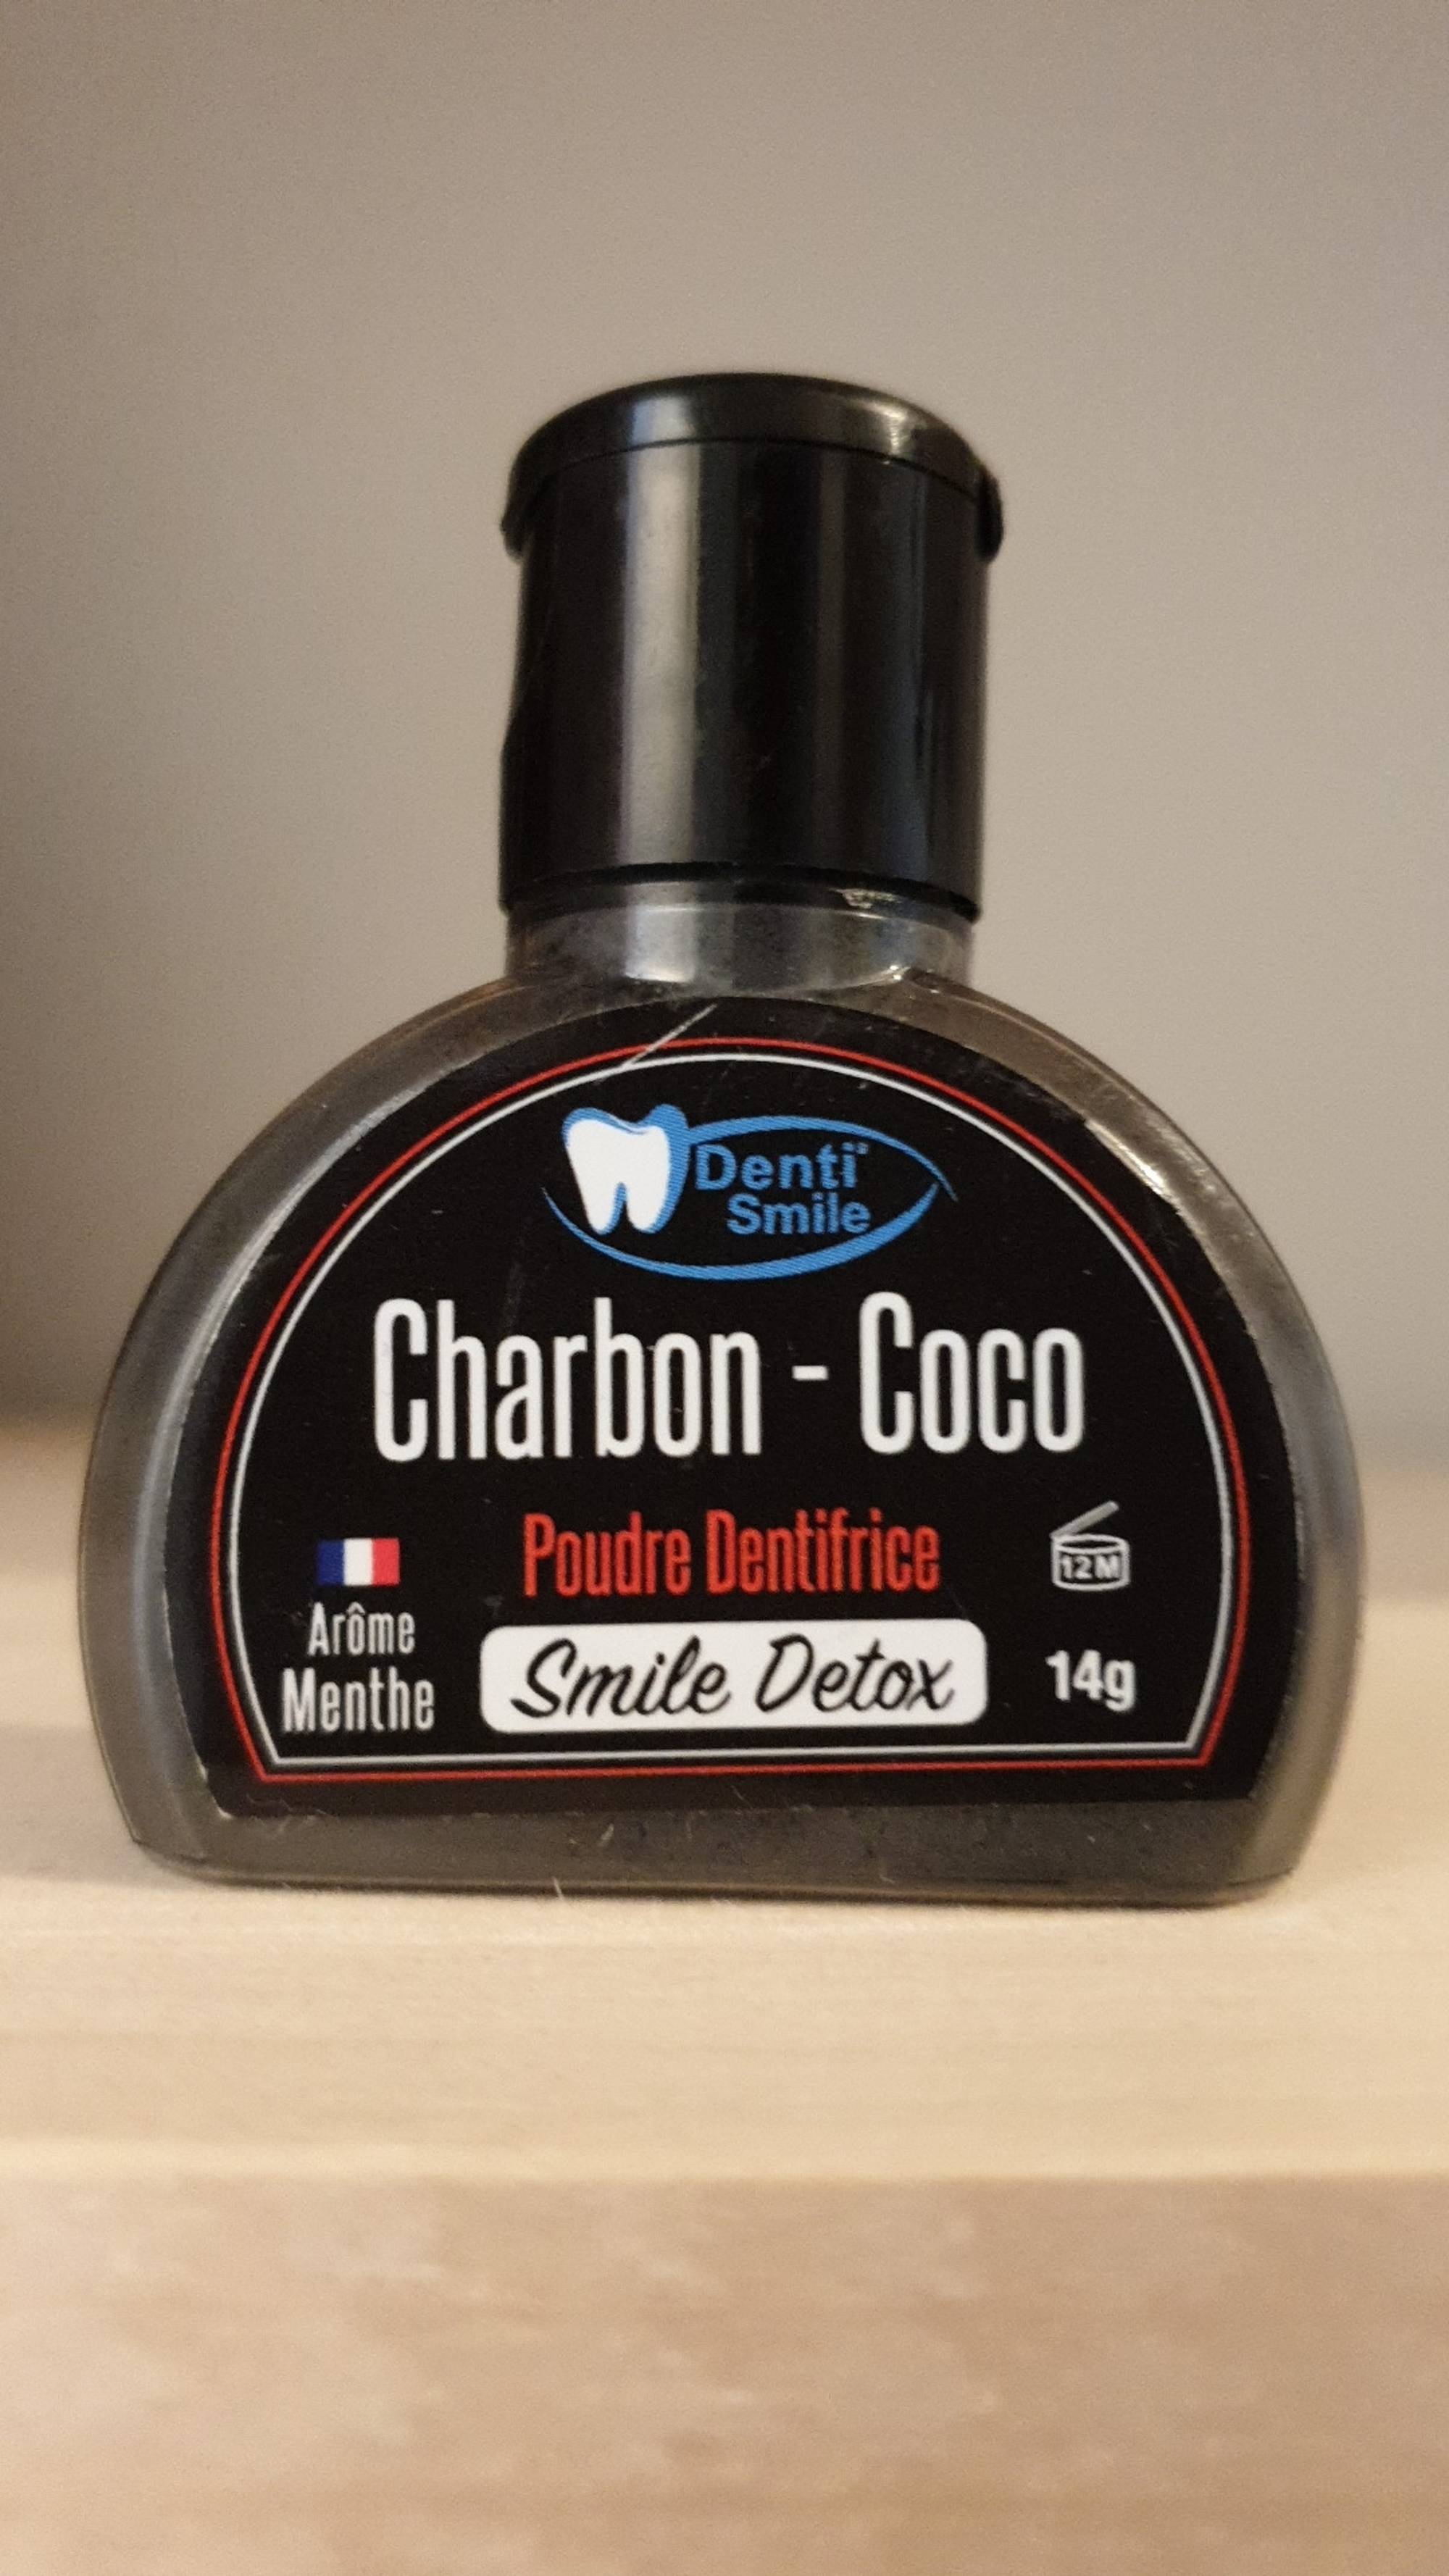 DENTI SMILE - Charbon-coco - Poudre dentifrice